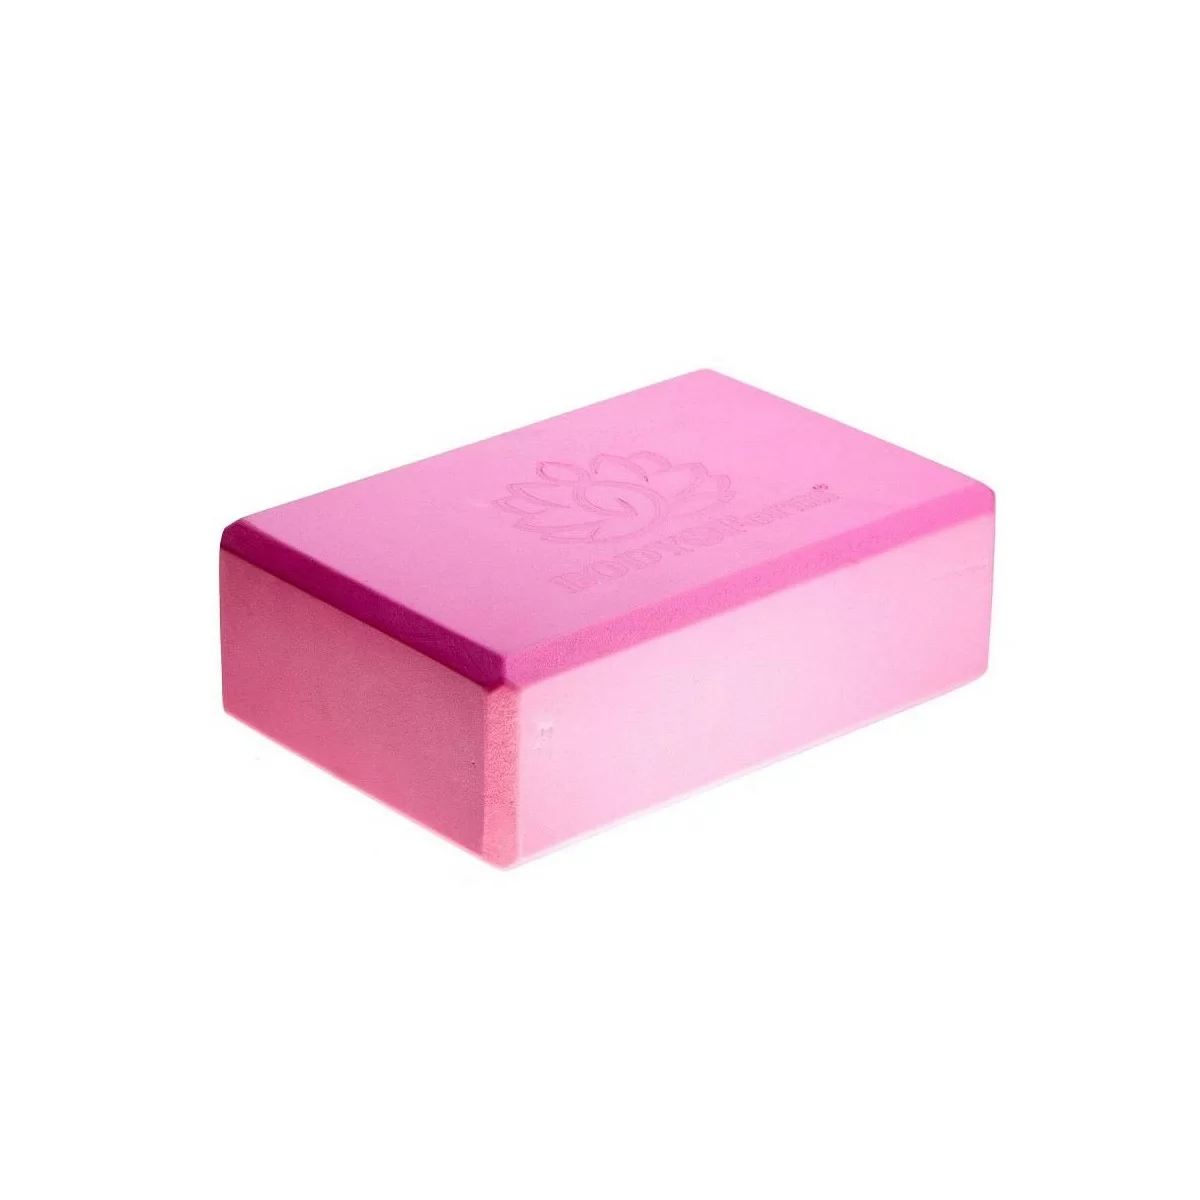 Реальное фото Блок для йоги BF-YB02 розовый от магазина СпортЕВ